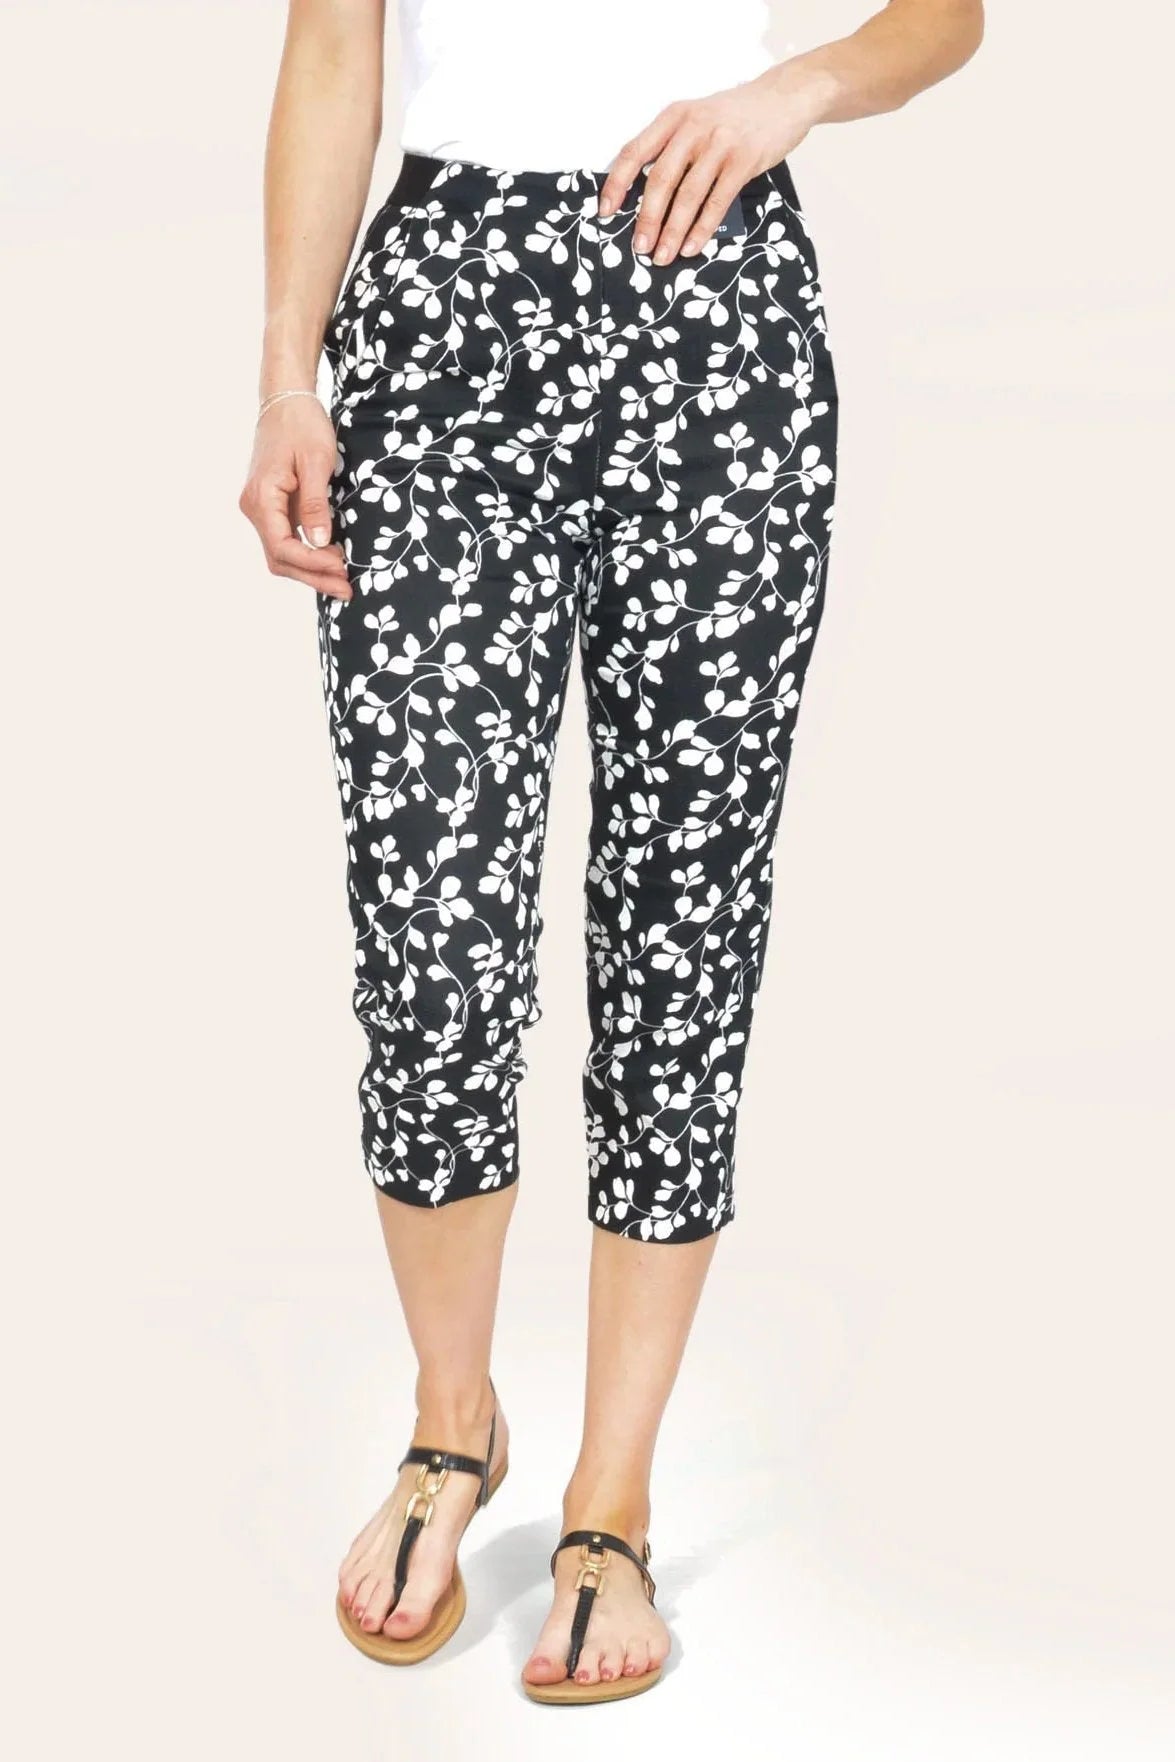 M&S Mia Slim Floral Crop Trousers Black / 20 / Short